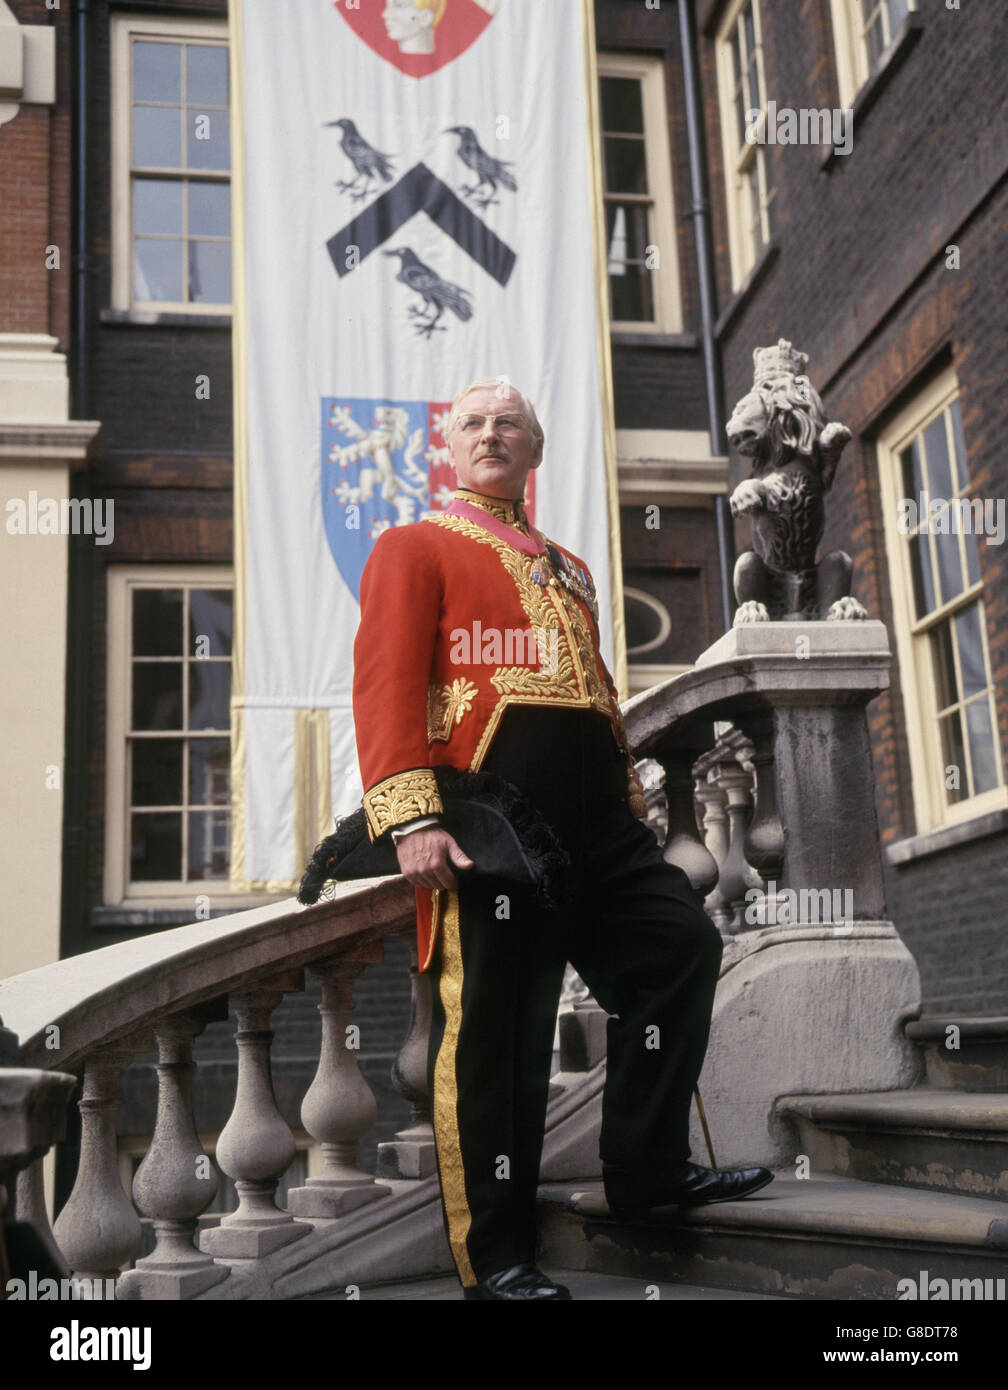 Major Francis Jones, Wales Herald Extraordinary, der an den Zeremonien im Zusammenhang mit der Investitur des Prinzen von Wales am 1. Juli 1969 teilnehmen wird. Er ist am College of Arms in London in der Uniform abgebildet, die er bei staatlichen Anlässen trägt. Stockfoto